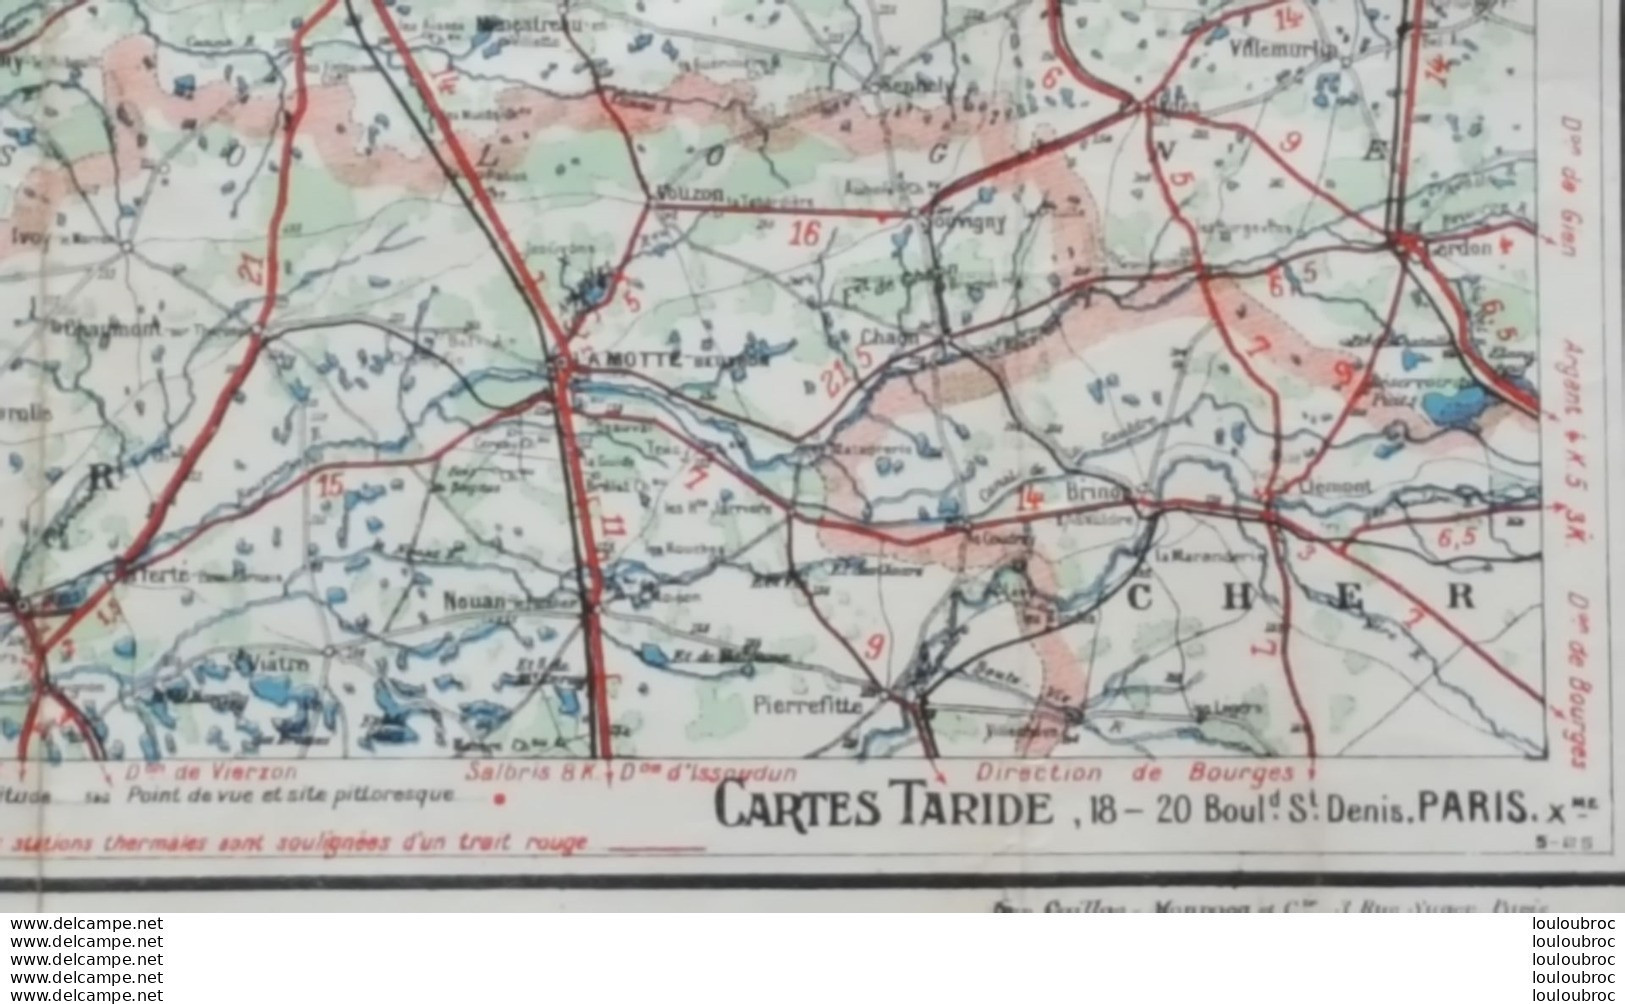 GRANDE CARTE ROUTIERE TARIDE N°8 PARIS ORLEANAIS FORMAT 92 X 74 CM PARFAIT ETAT - Mapas Geográficas